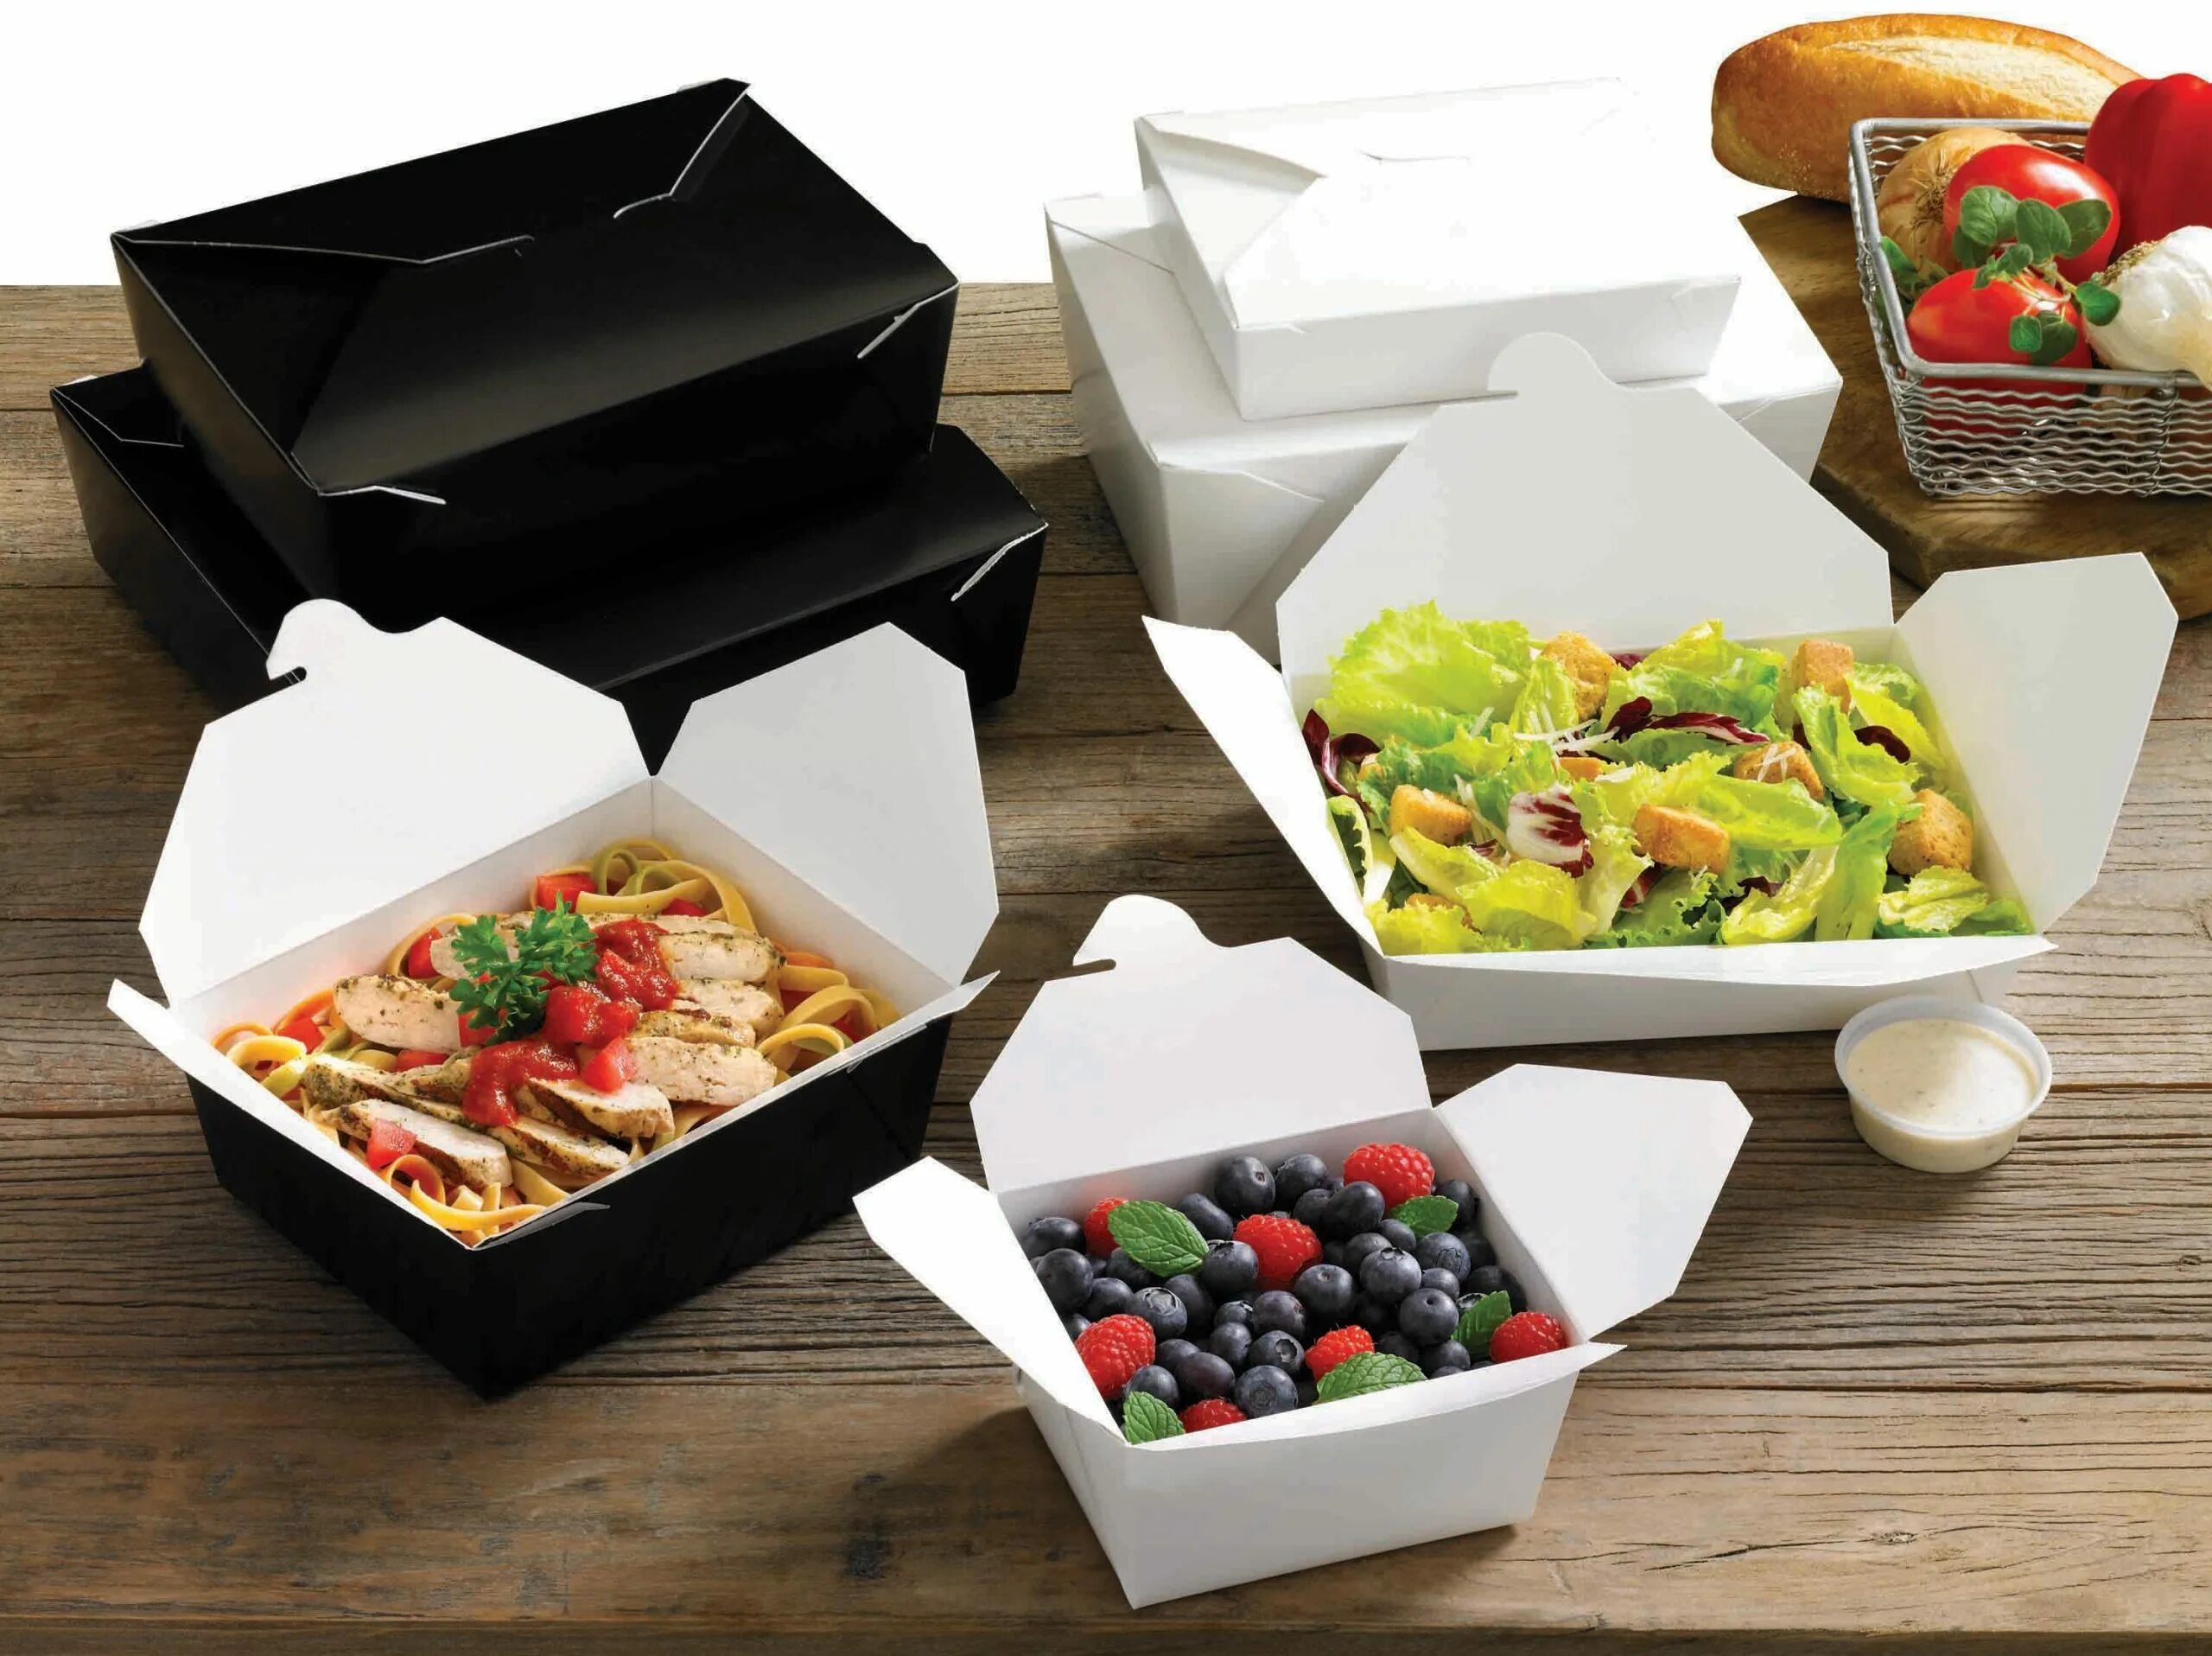 Еда в упаковке. Упаковка для еды на вынос. Готовая еда в упаковке. Коробка для еды на вынос.